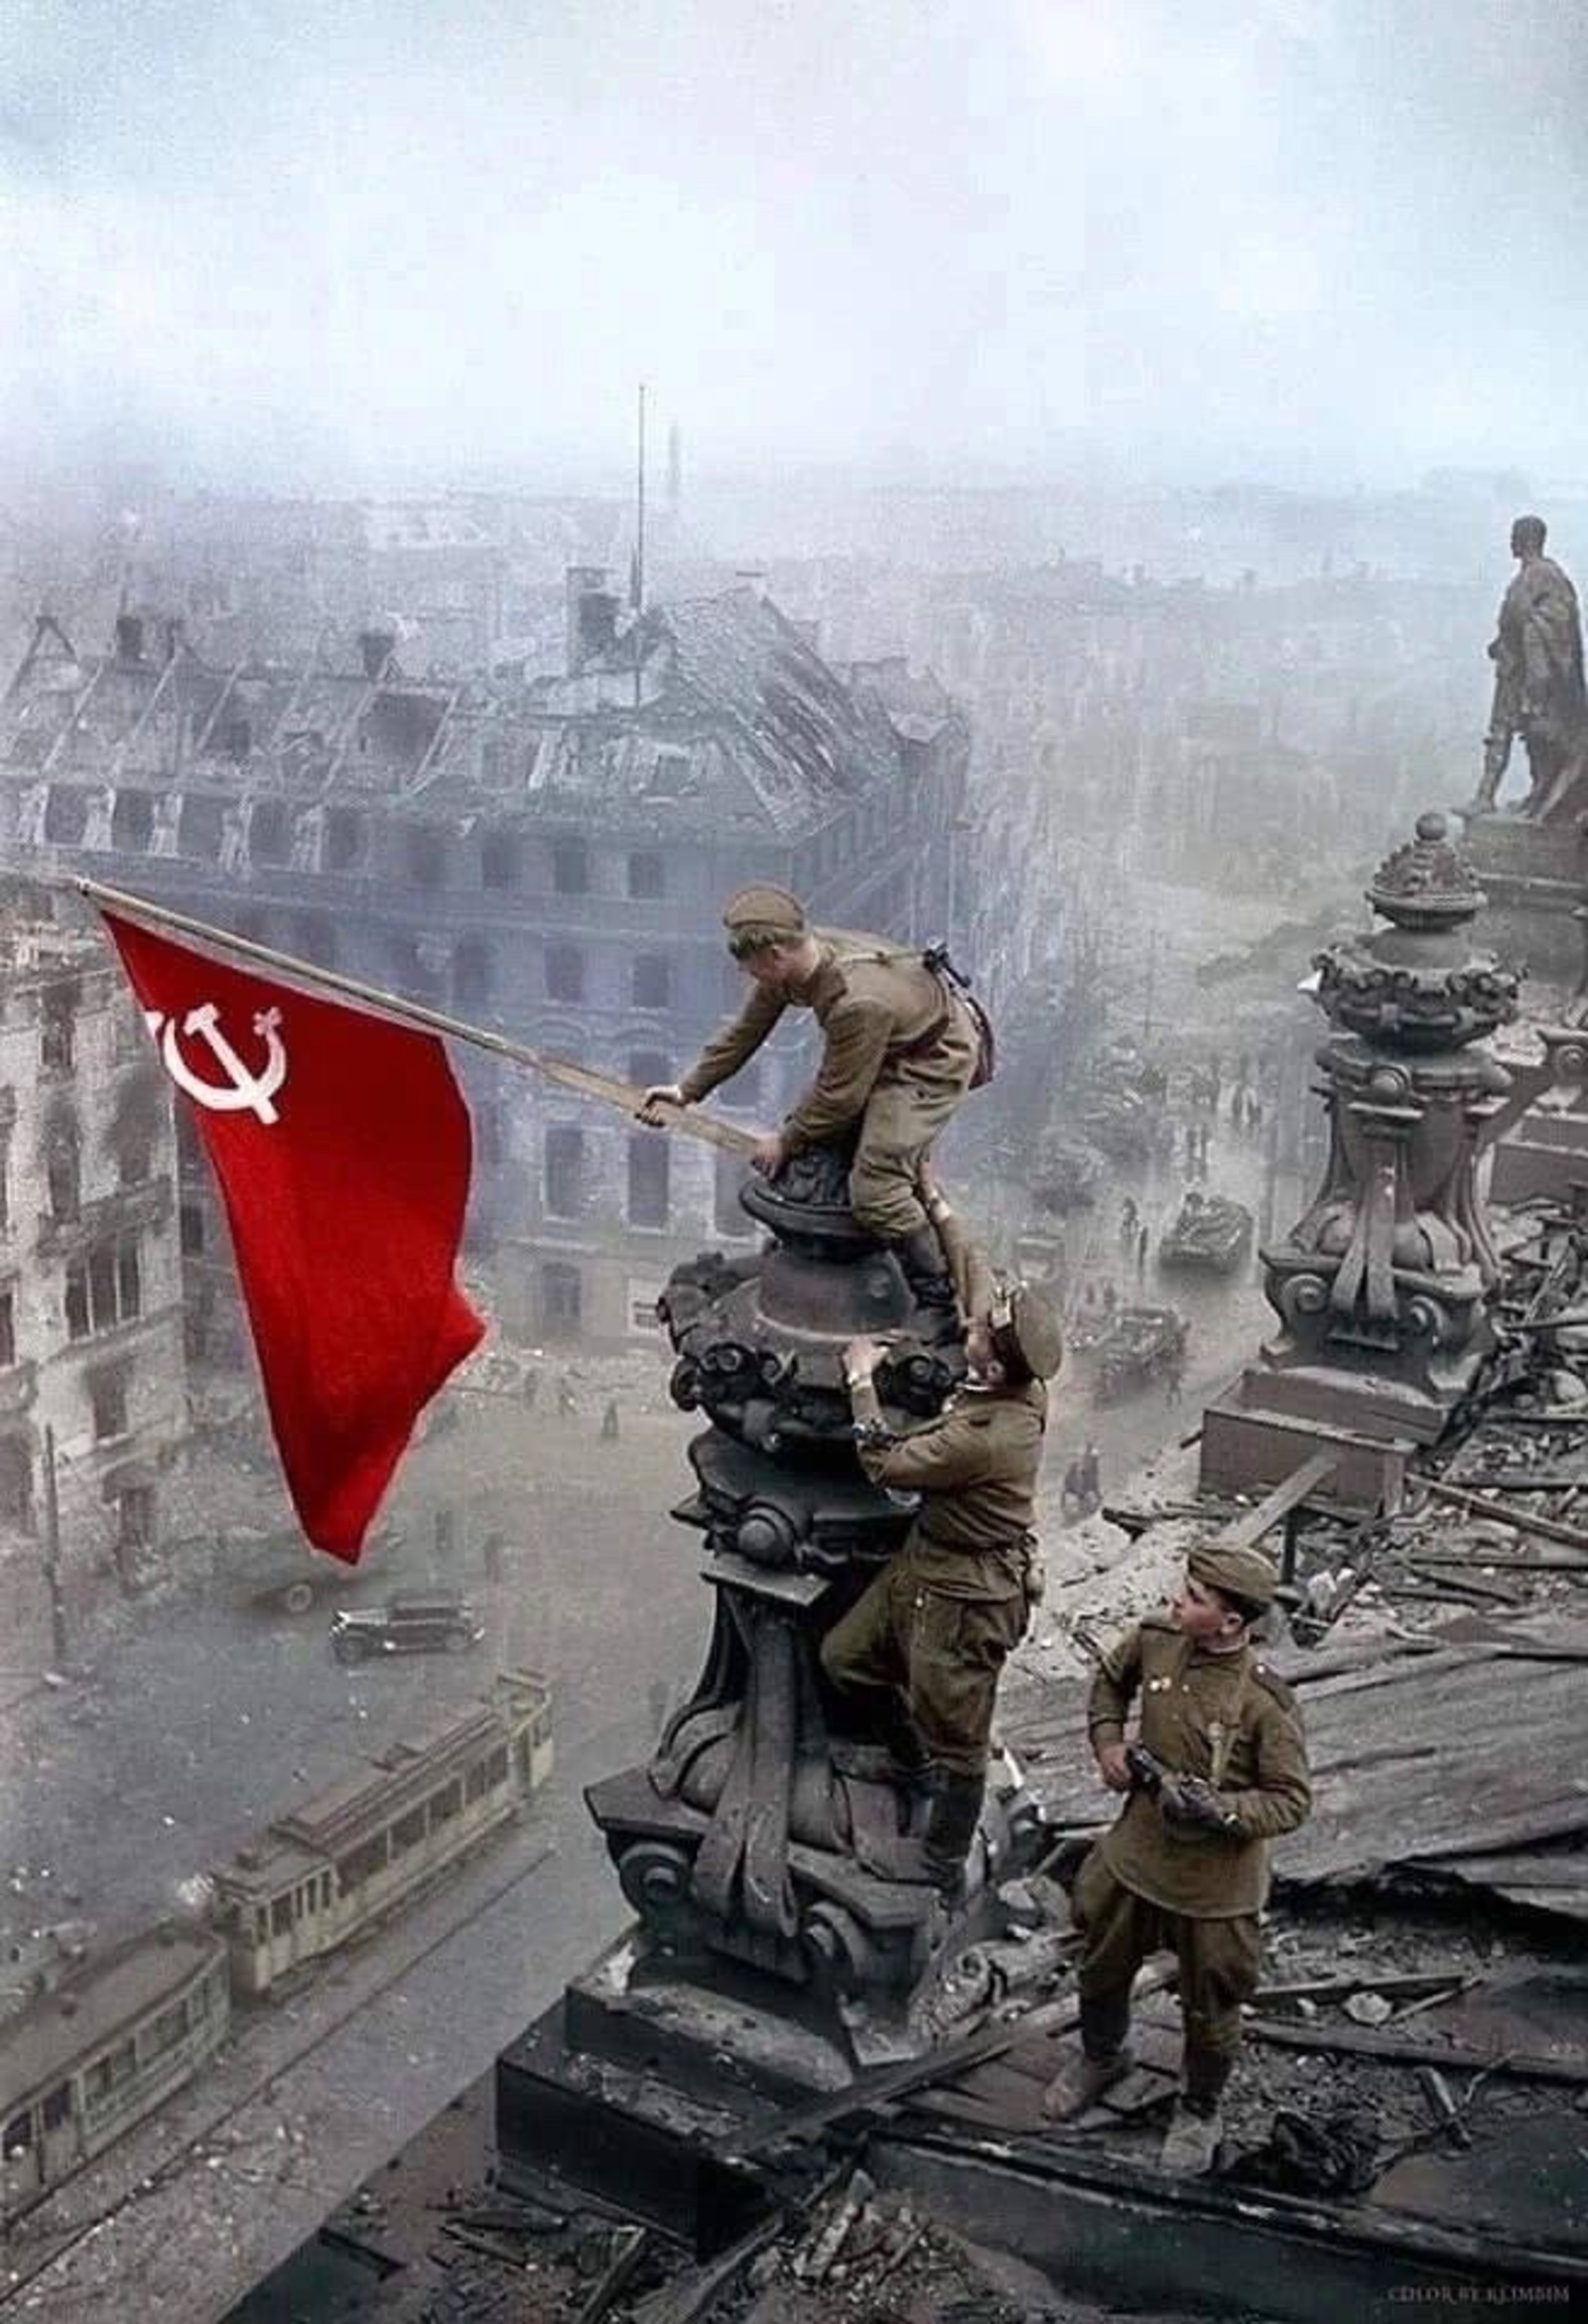 В этот день, 30 апреля 1945 года, советские солдаты водрузили Знамя Победы над зданием Рейхстага